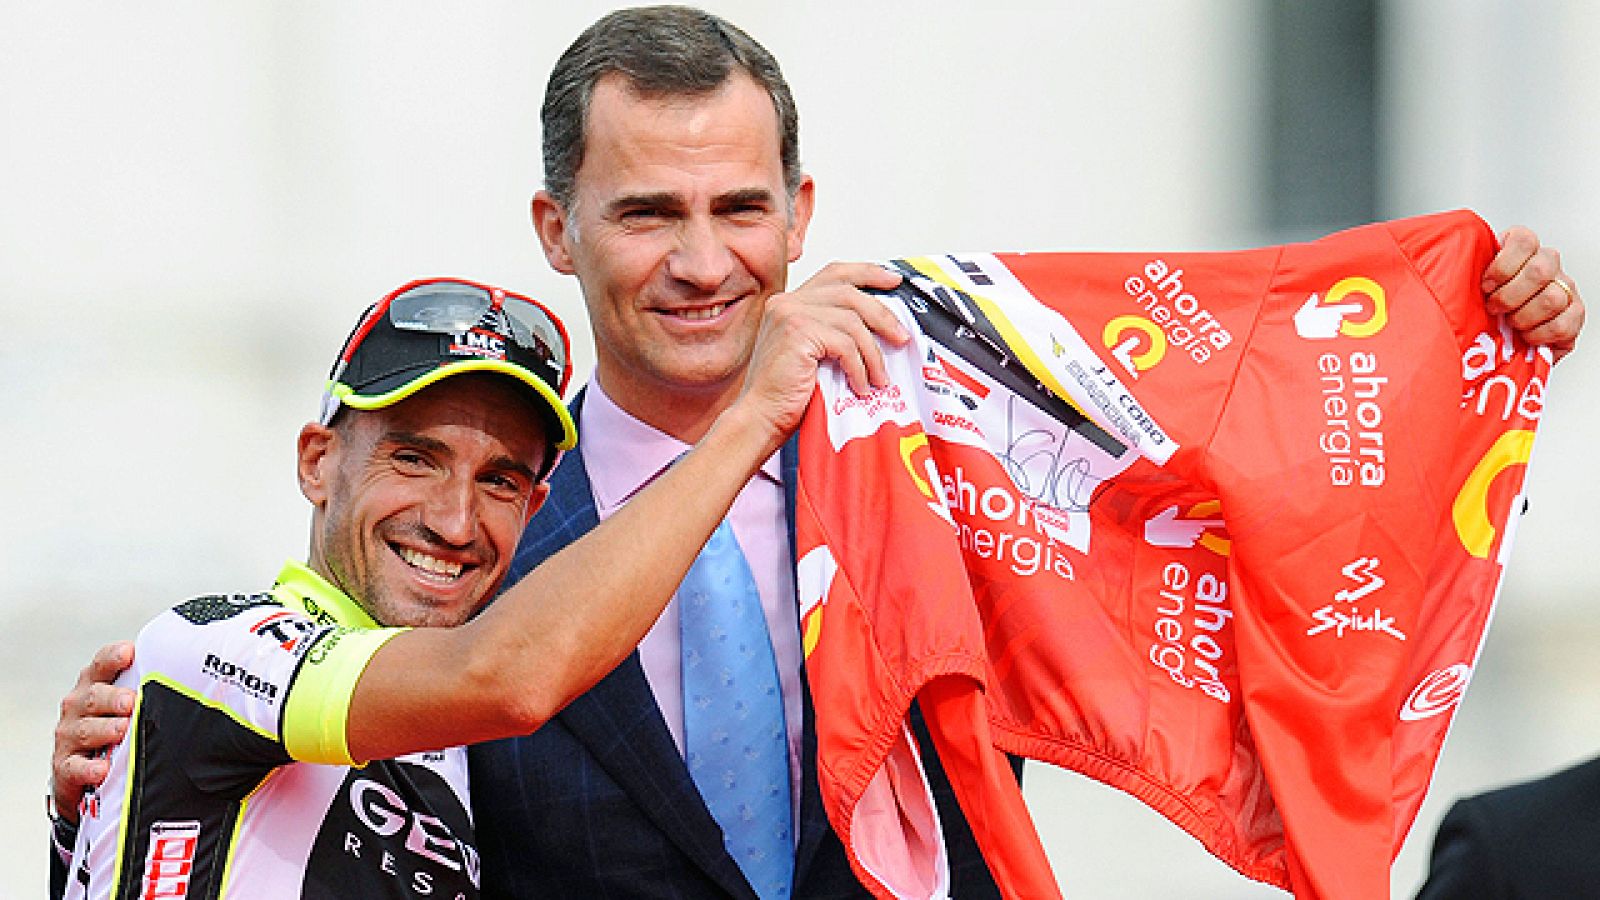 El himno español sonó finalmente en el podio de Cibeles en homenaje al campeón a Juanjo Cobo. Dos británicos: Chris Froome y Bradley Wiggins acompañaron al cántabro en el cajón.